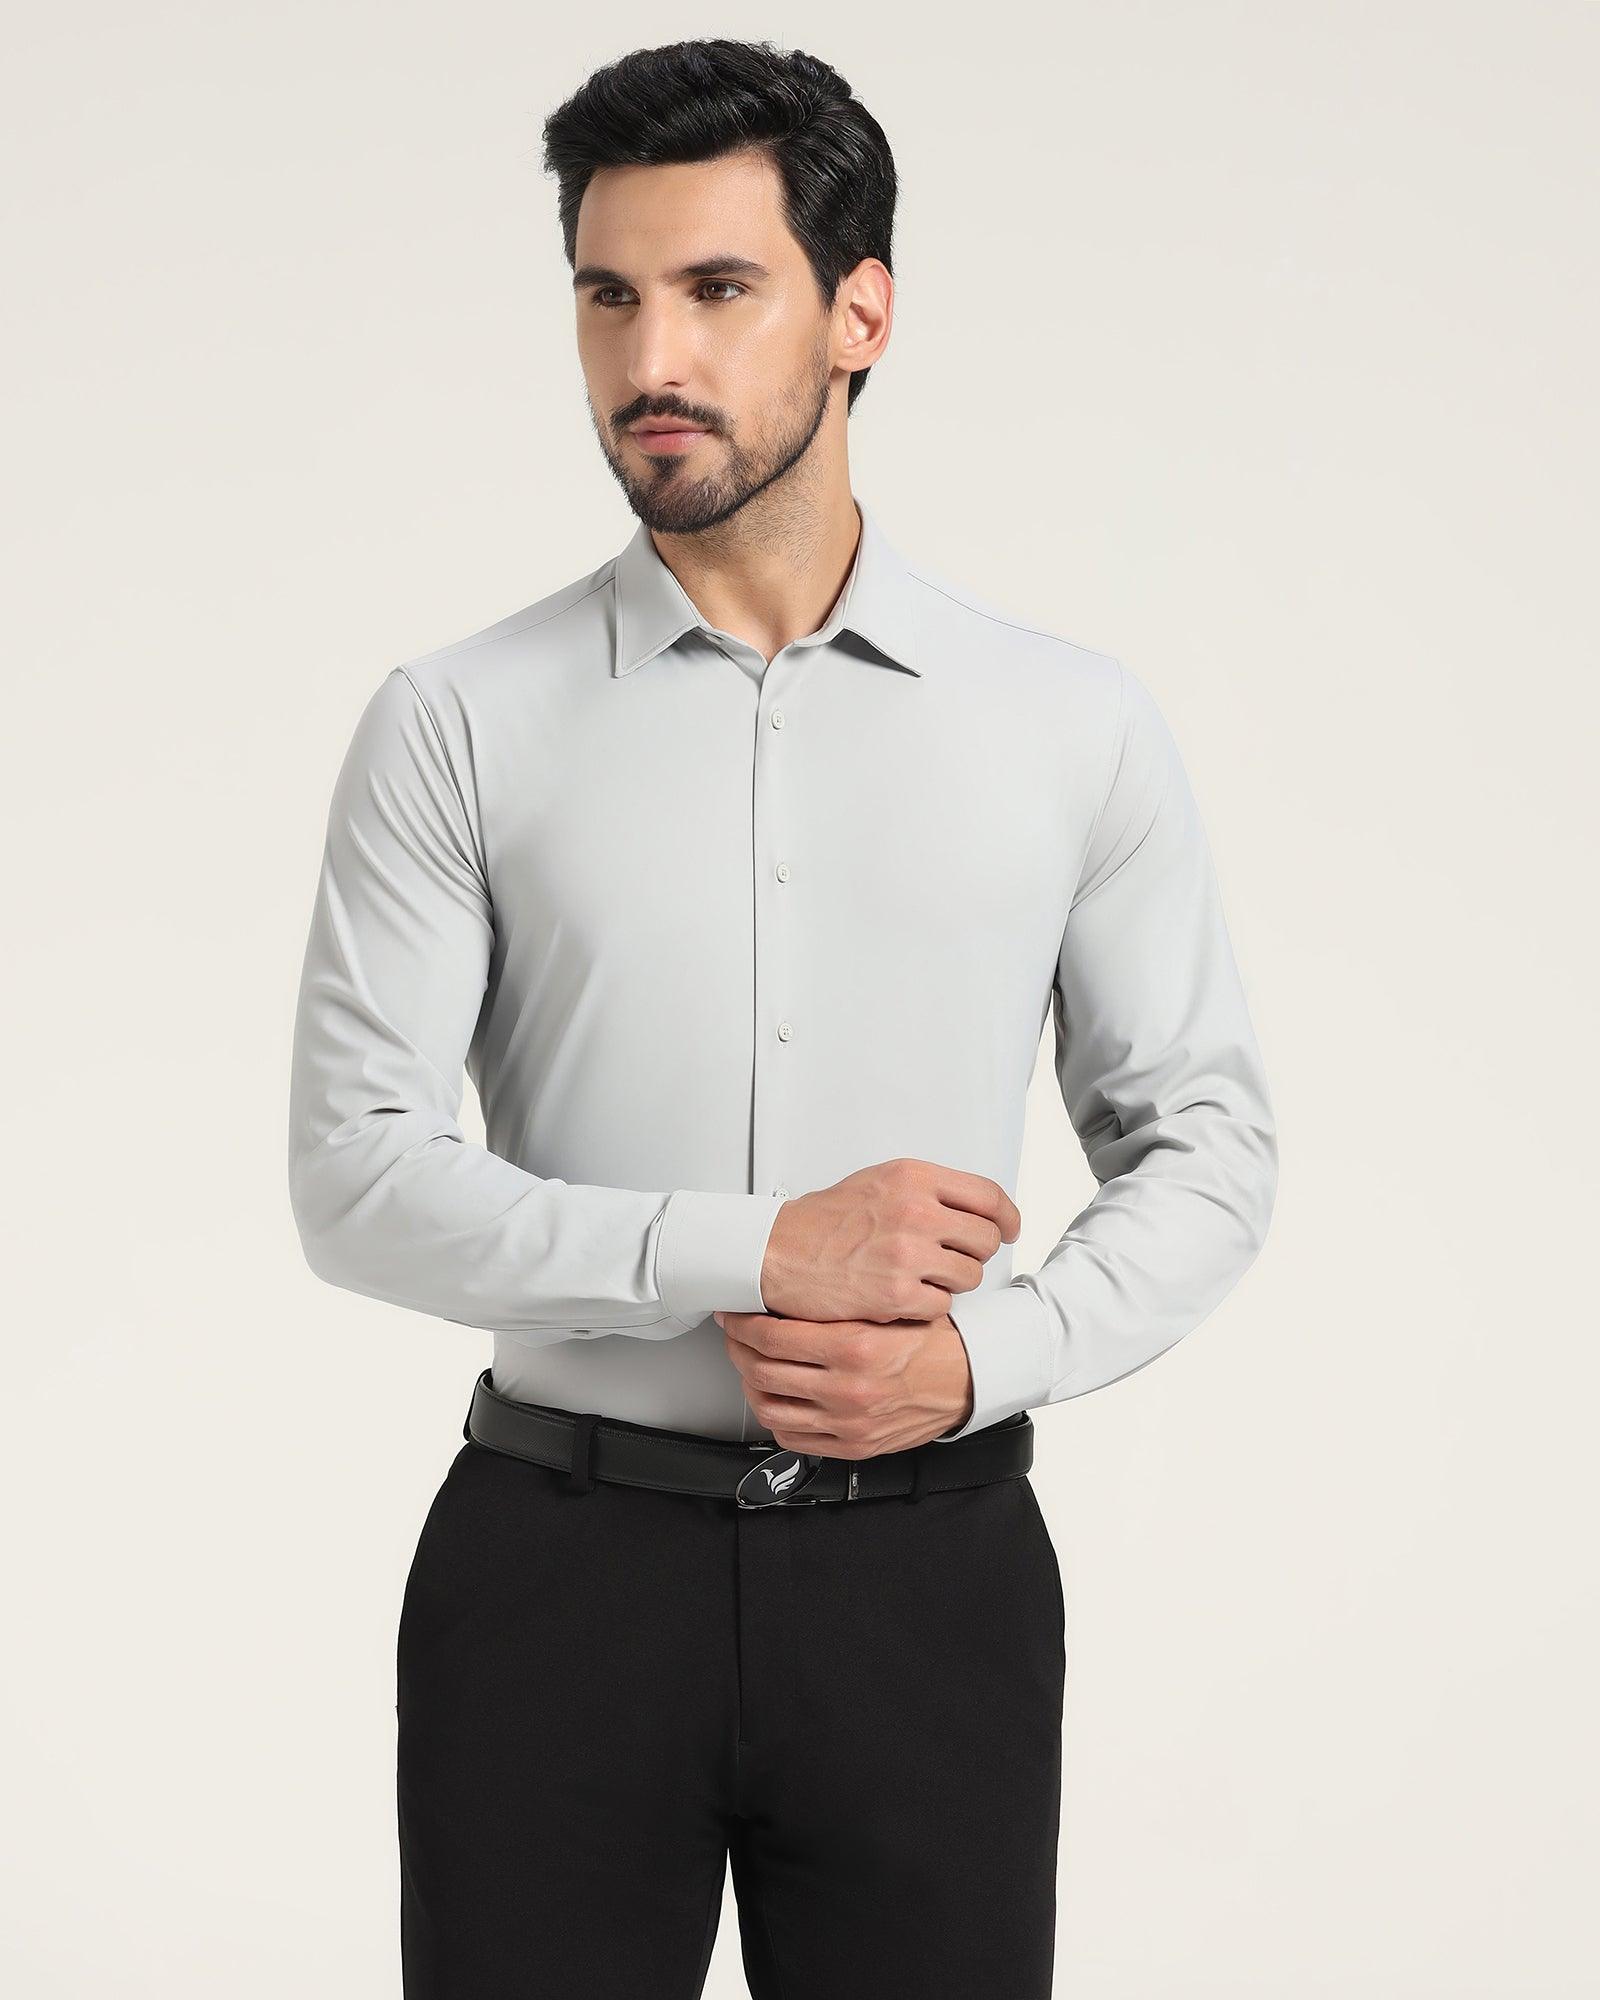 TechPro Formal Grey Solid Shirt - Zabka